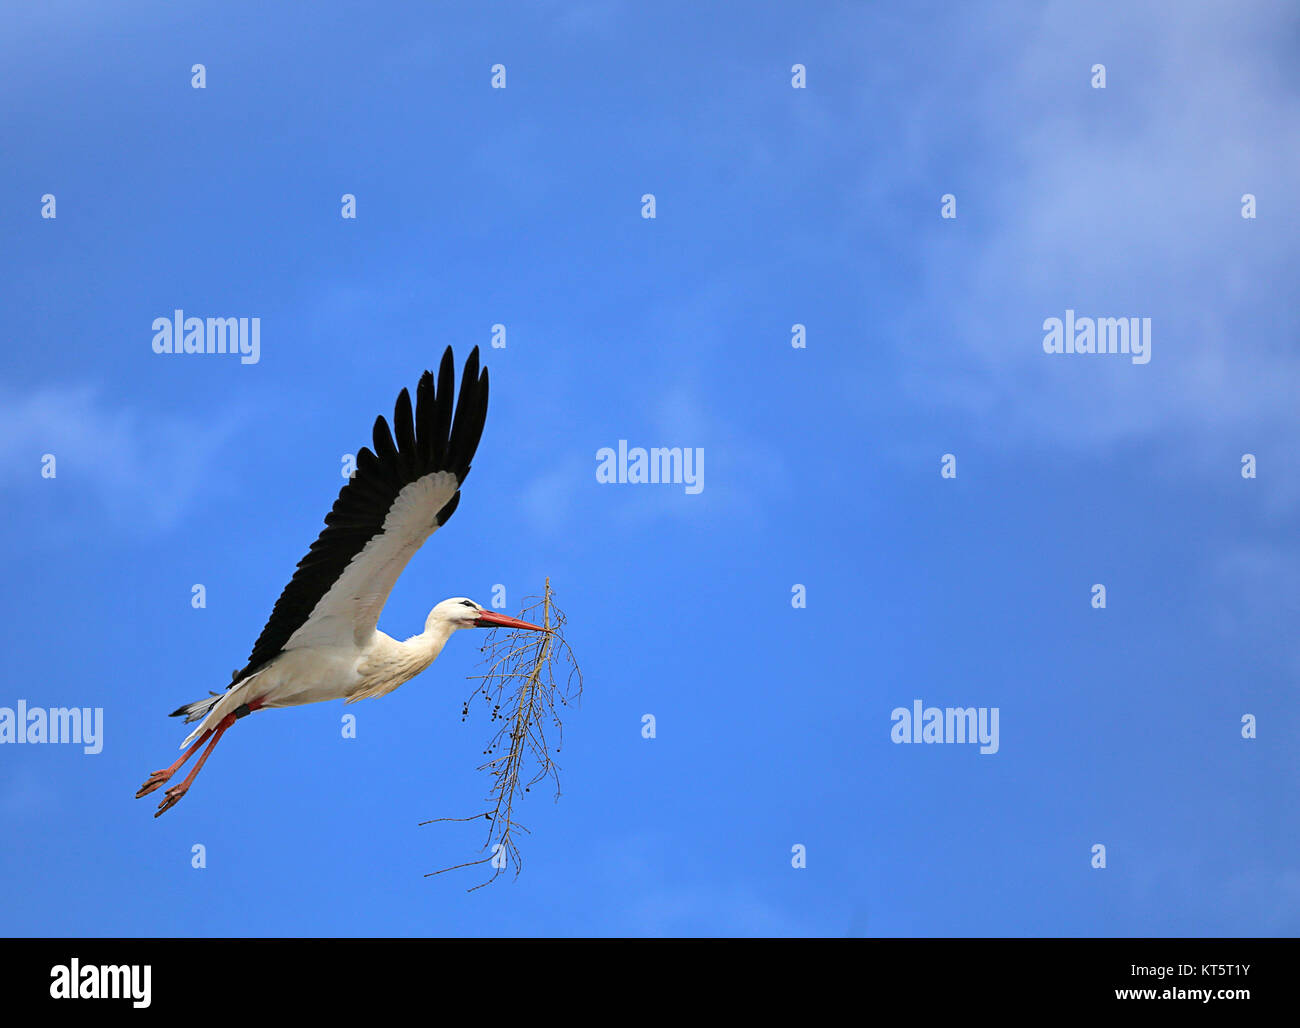 tork en vol contre un ciel bleu avec du matériel de nidification Banque D'Images